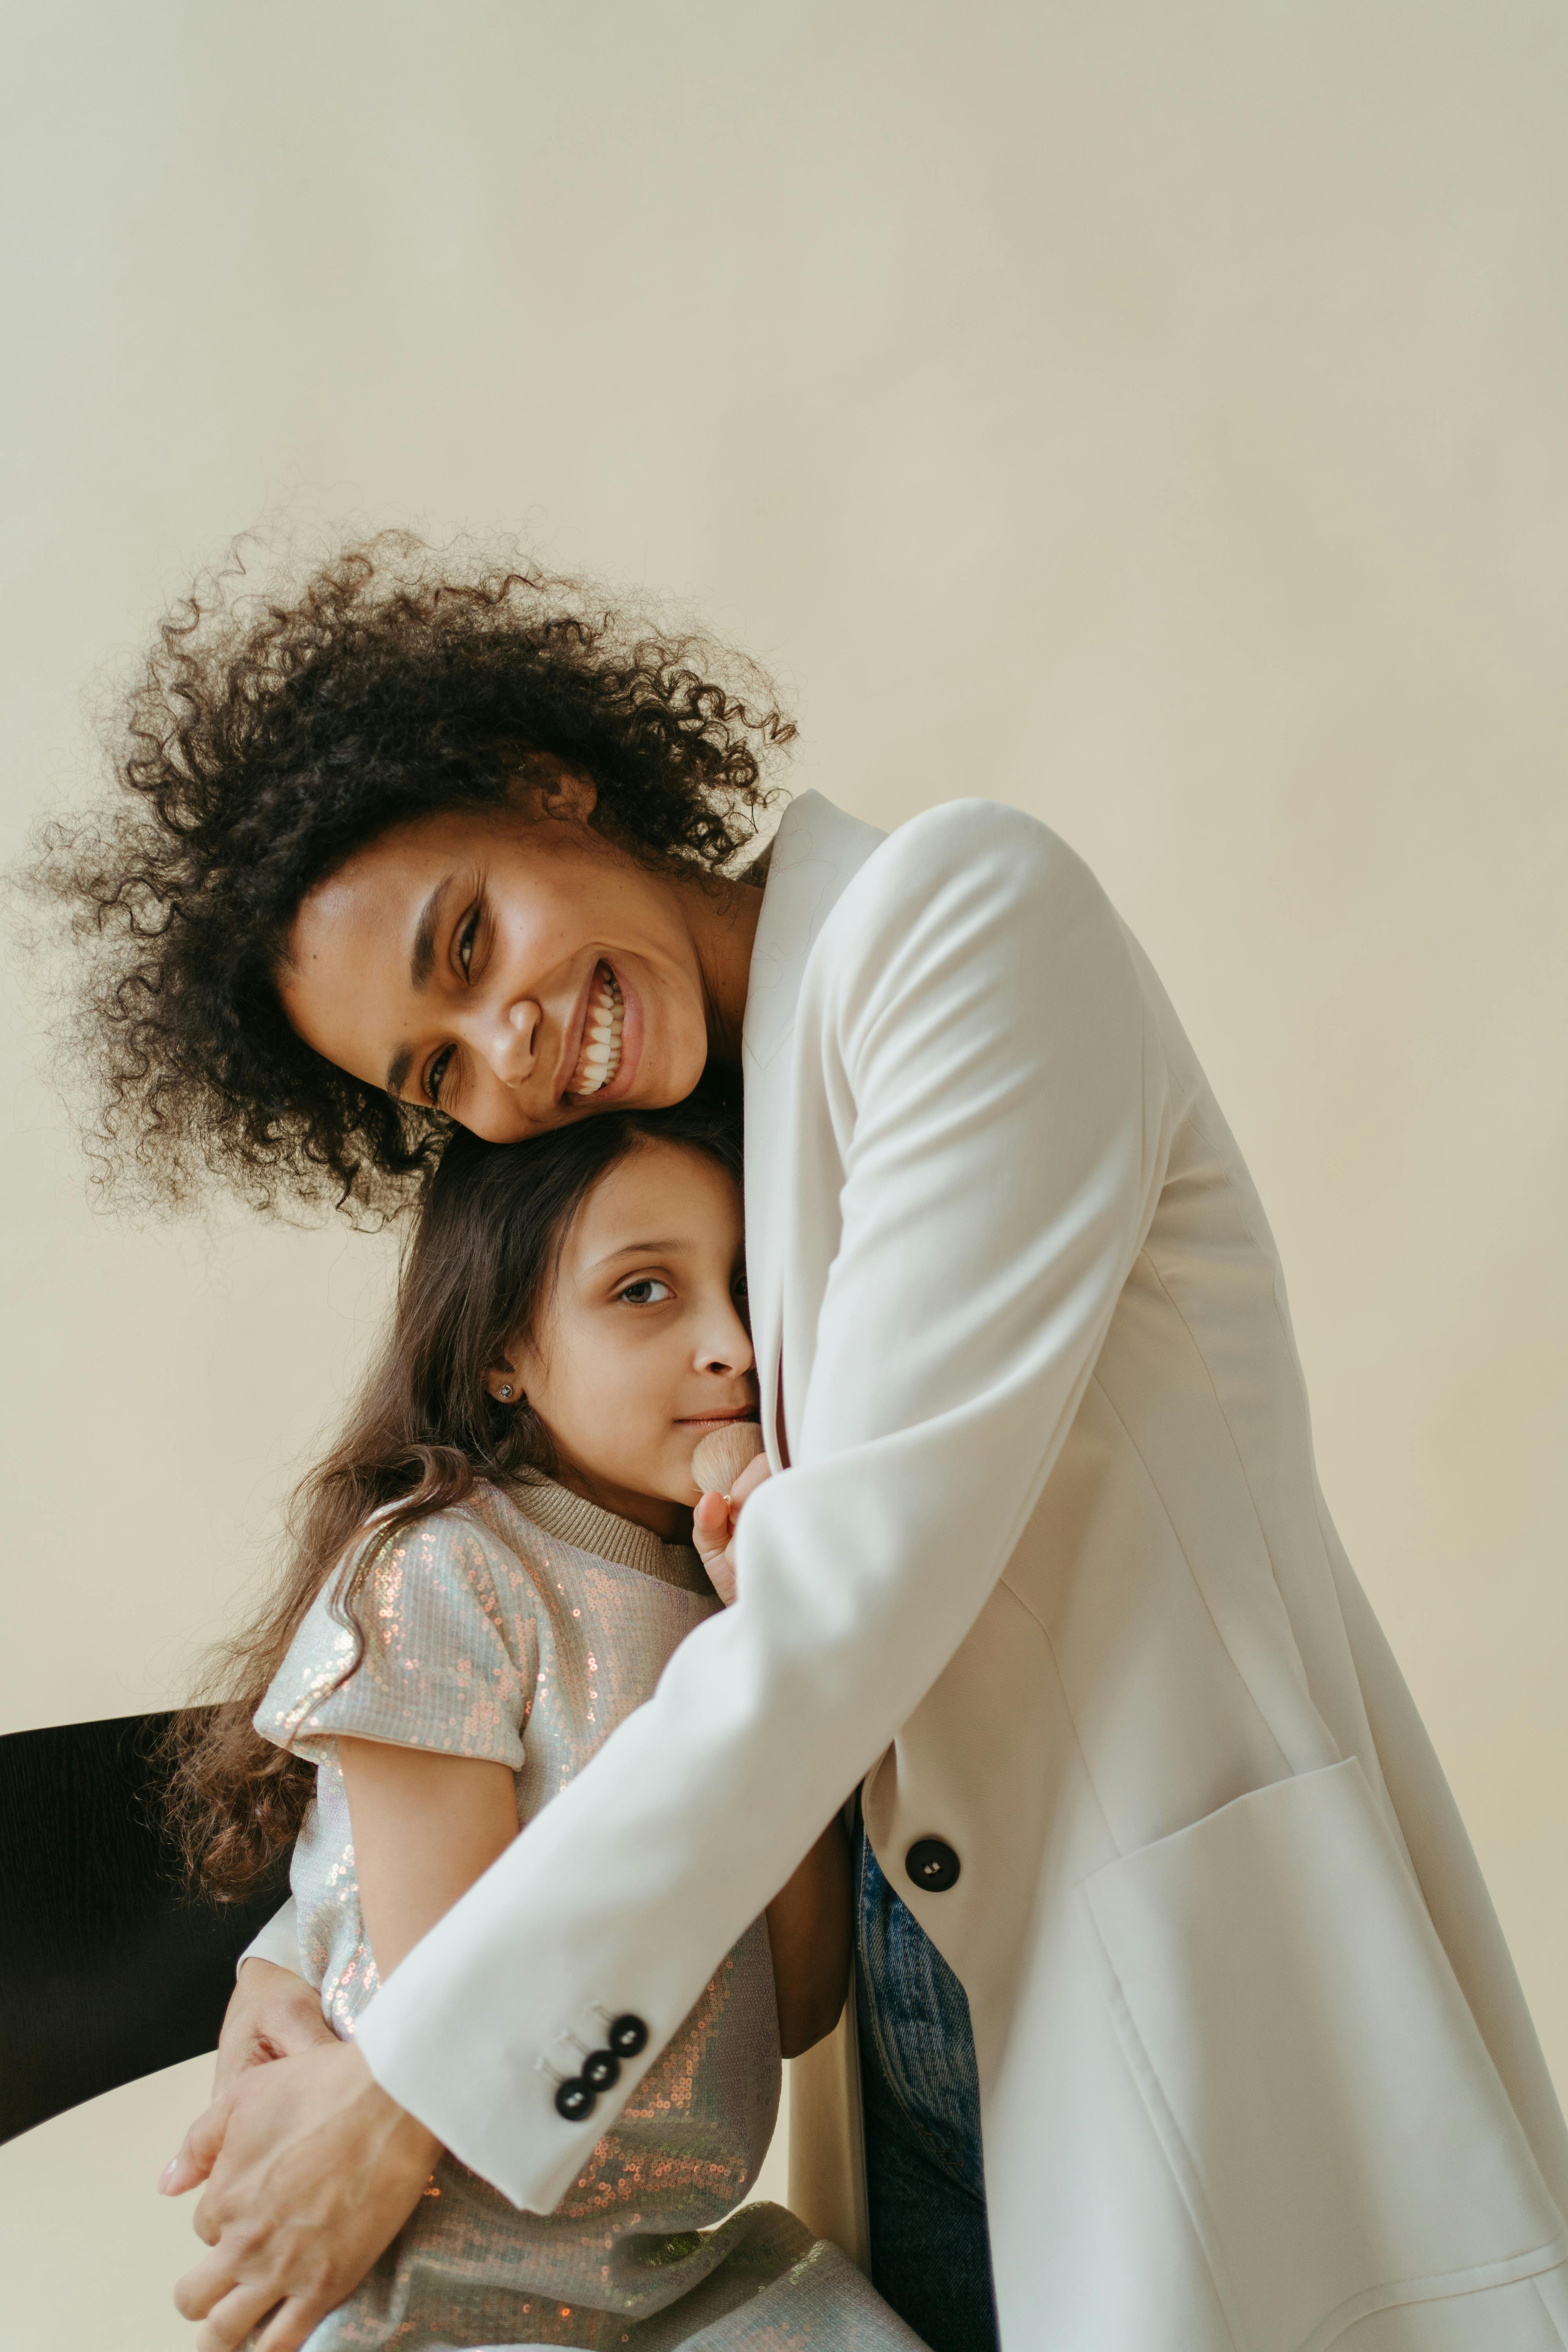 Eine Frau, die ihre Tochter umarmt | Quelle: Pexels